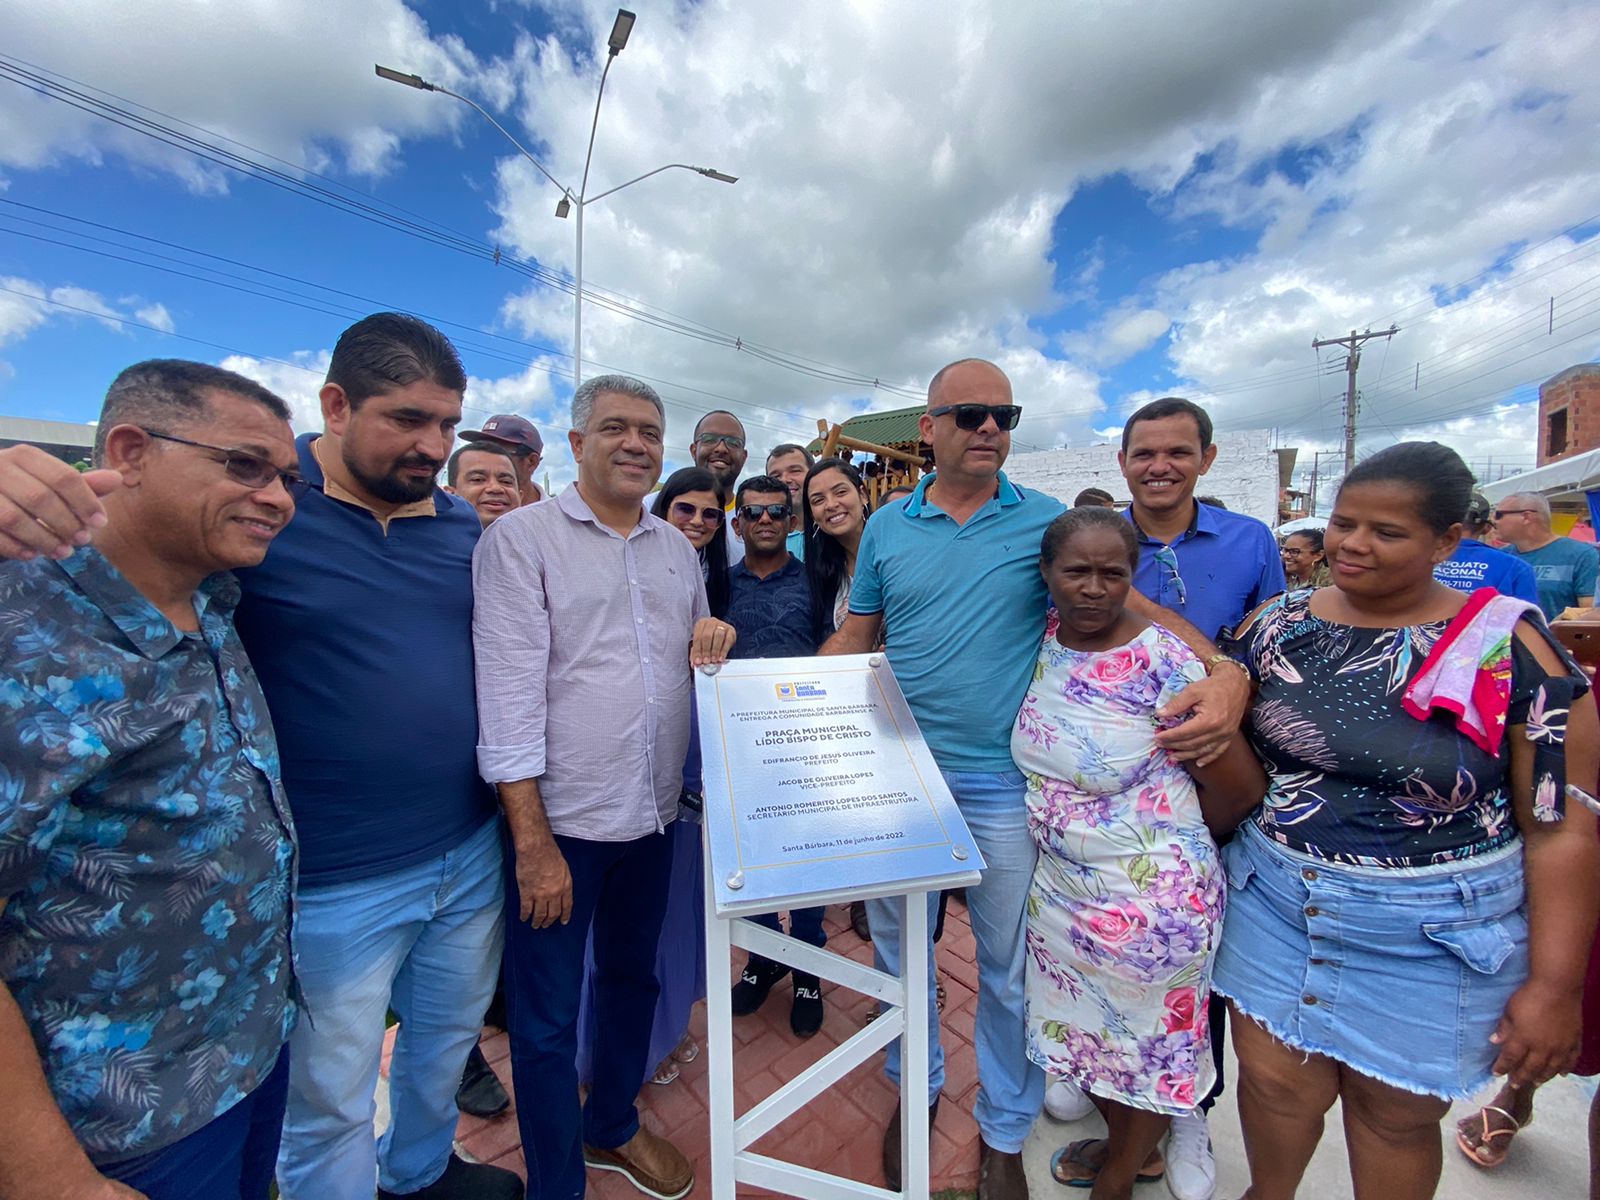 Em Santa Bárbara, prefeito inaugura nova praça e anuncia construção de creche 